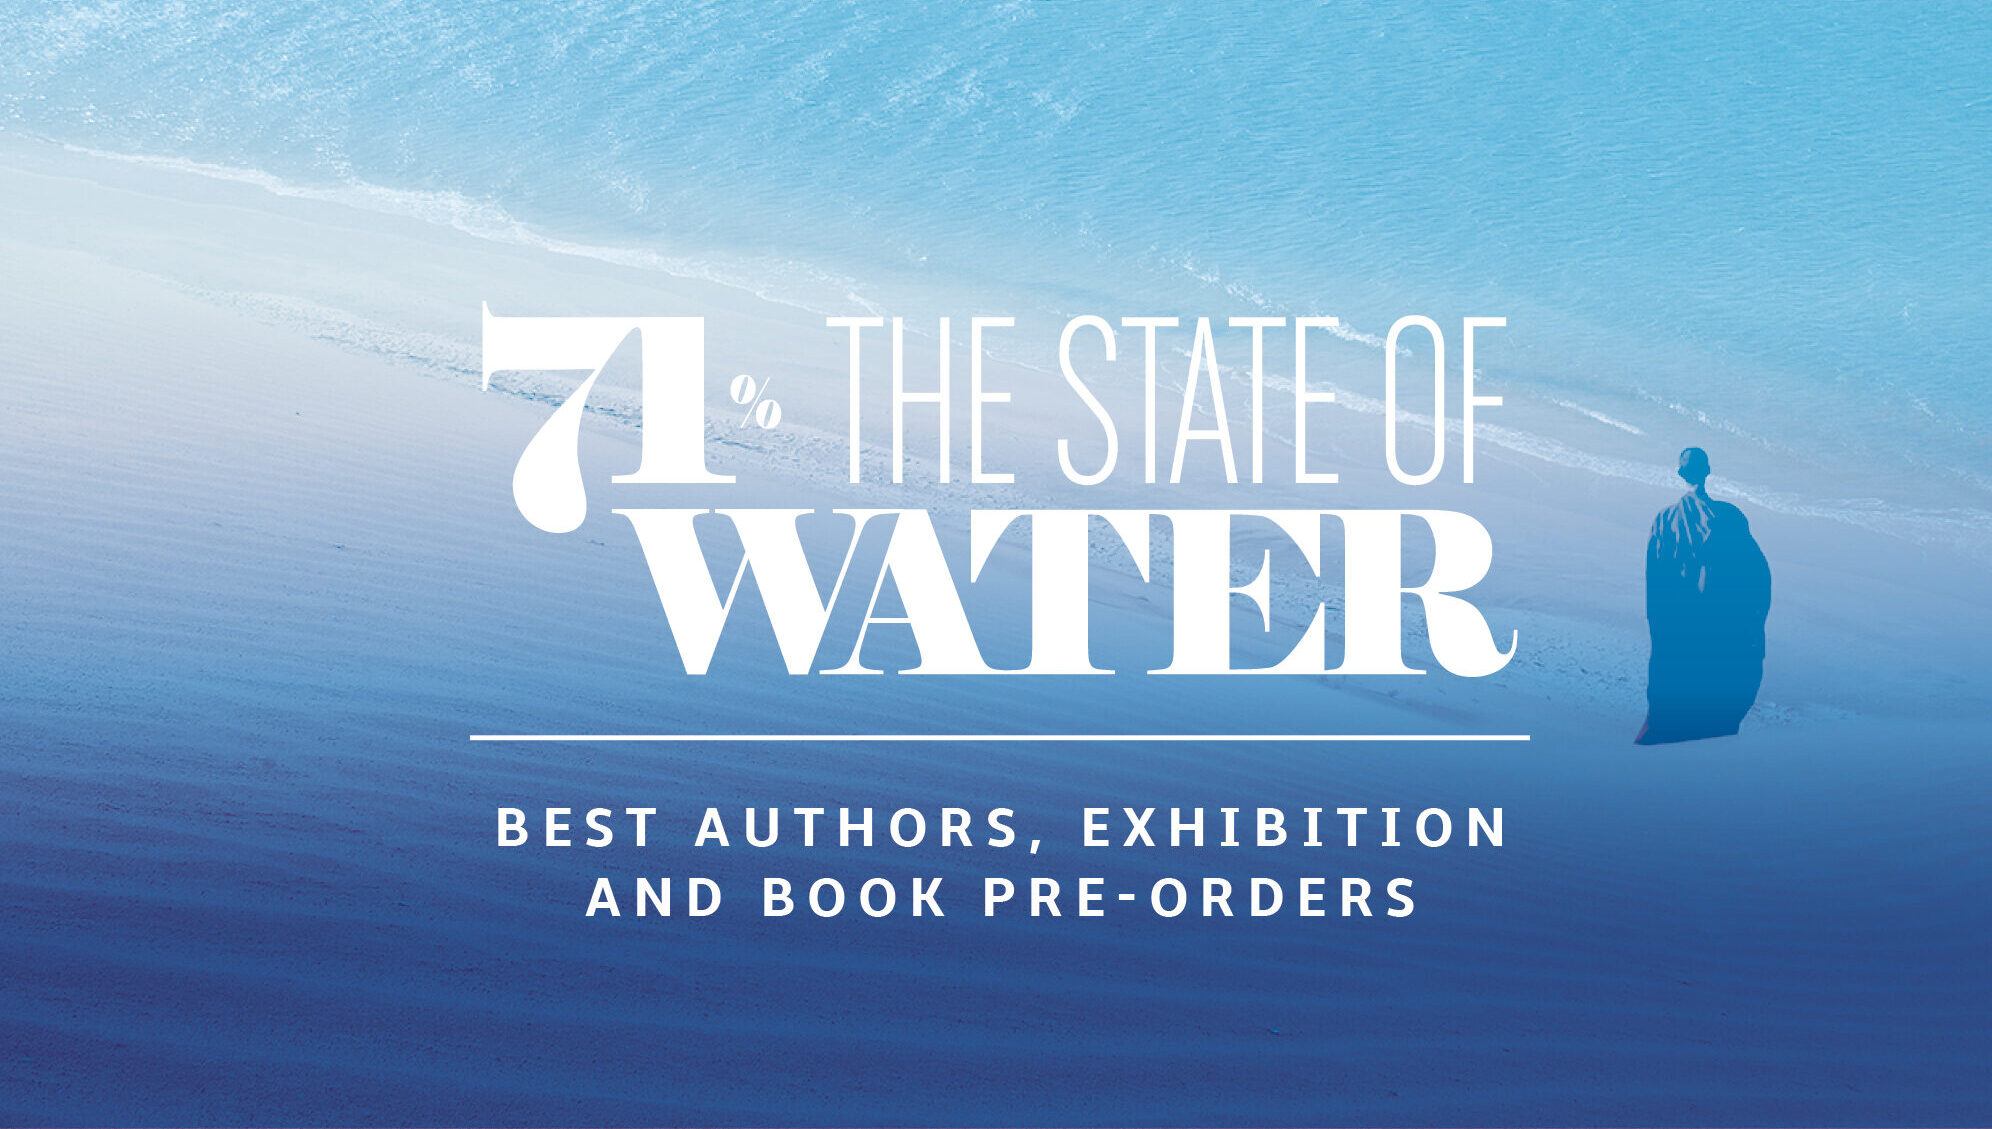 71% - The State of Water: migliori autori, fotografi selezionati e uscita volume fotografico